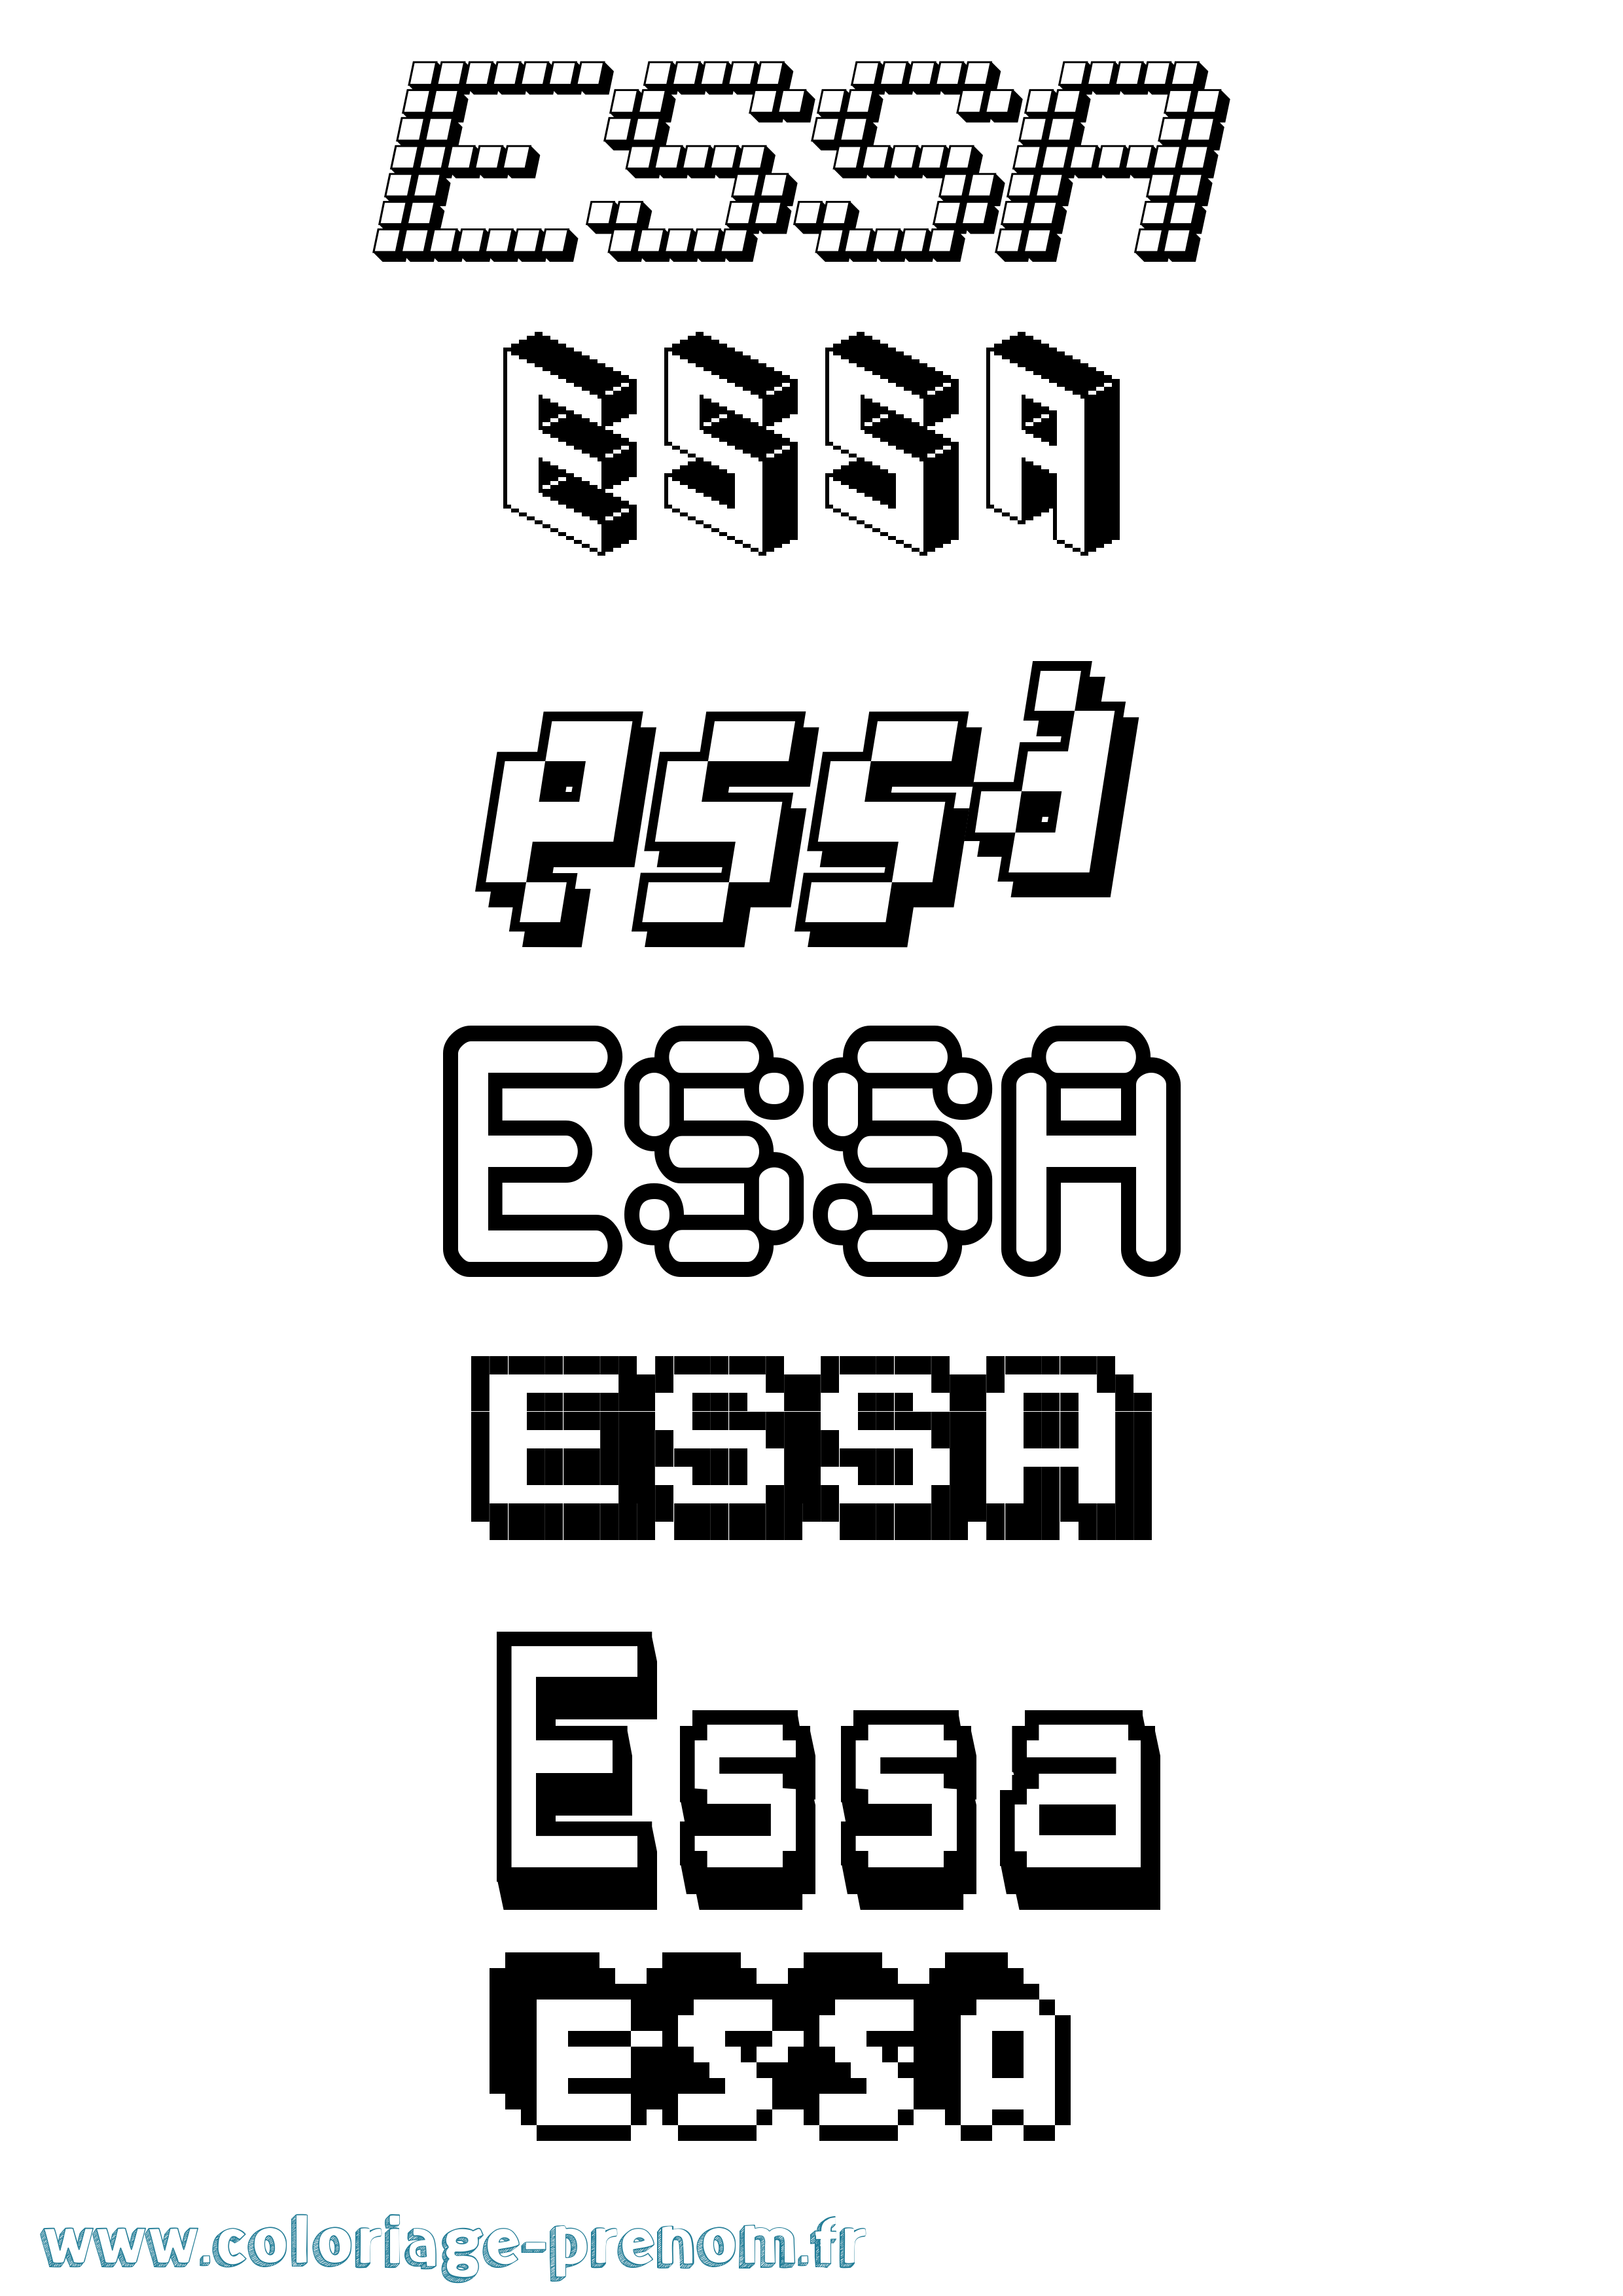 Coloriage prénom Essa Pixel